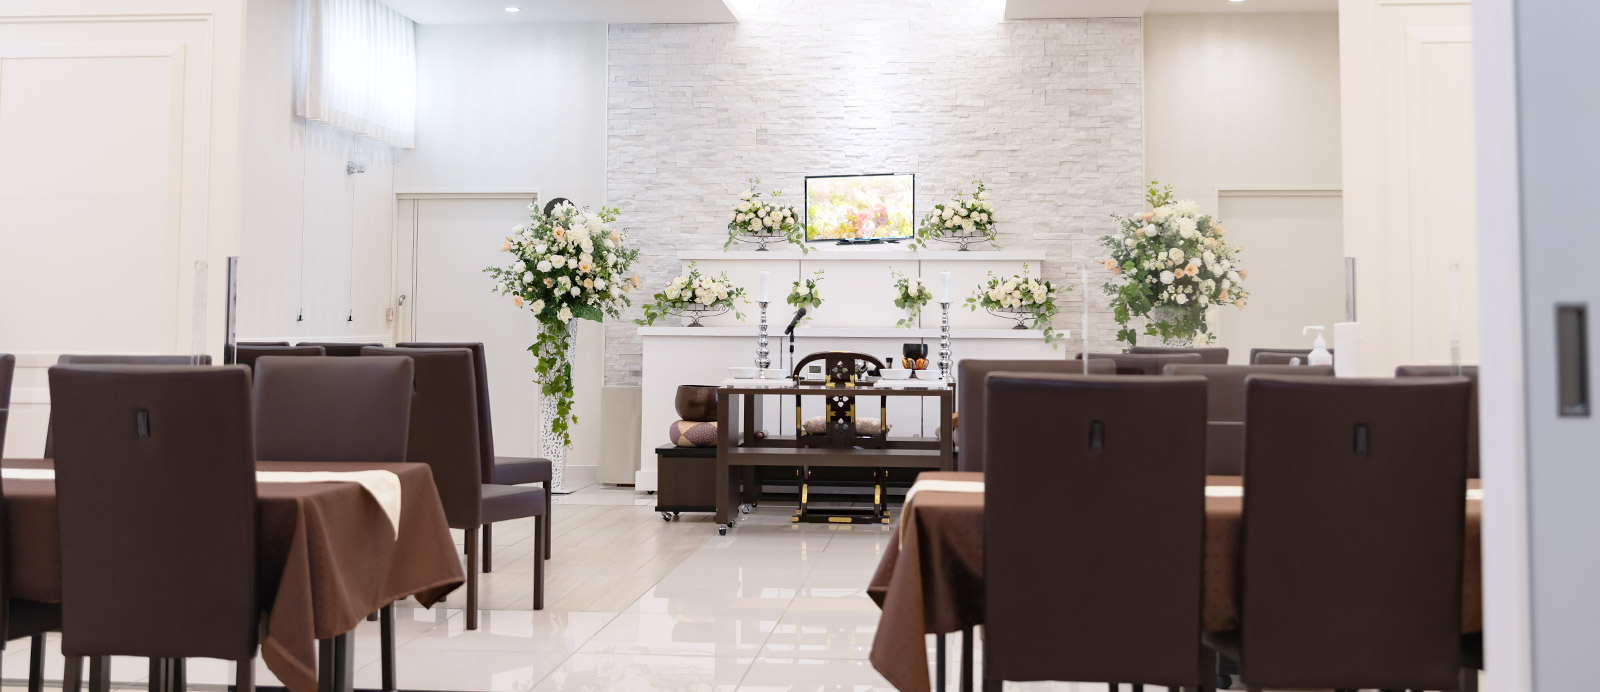 泉中央ホールで葬儀・葬式が9.5万円からできる家族葬の仙和のホールの内装イメージ